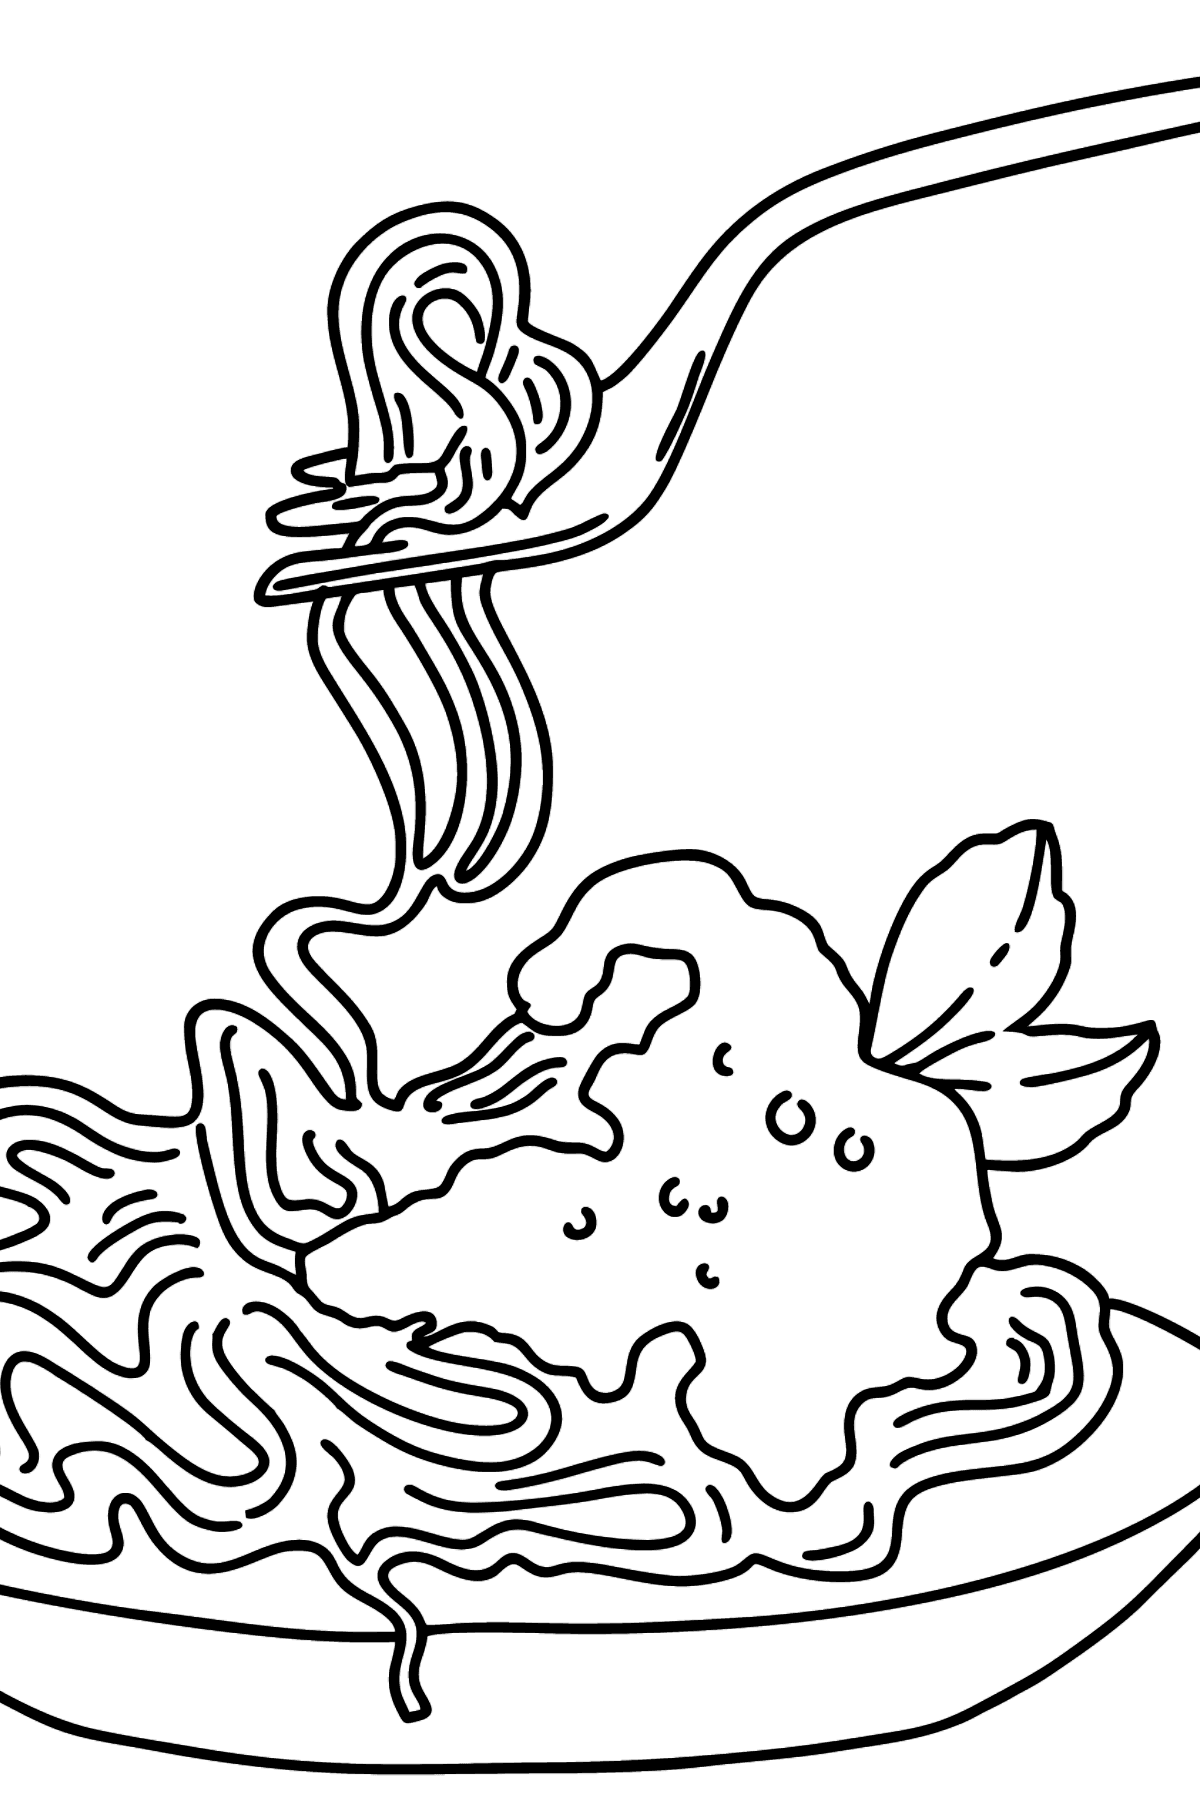 Dibujo de Espaguetis con Salsa de Tomate para colorear - Dibujos para Colorear para Niños